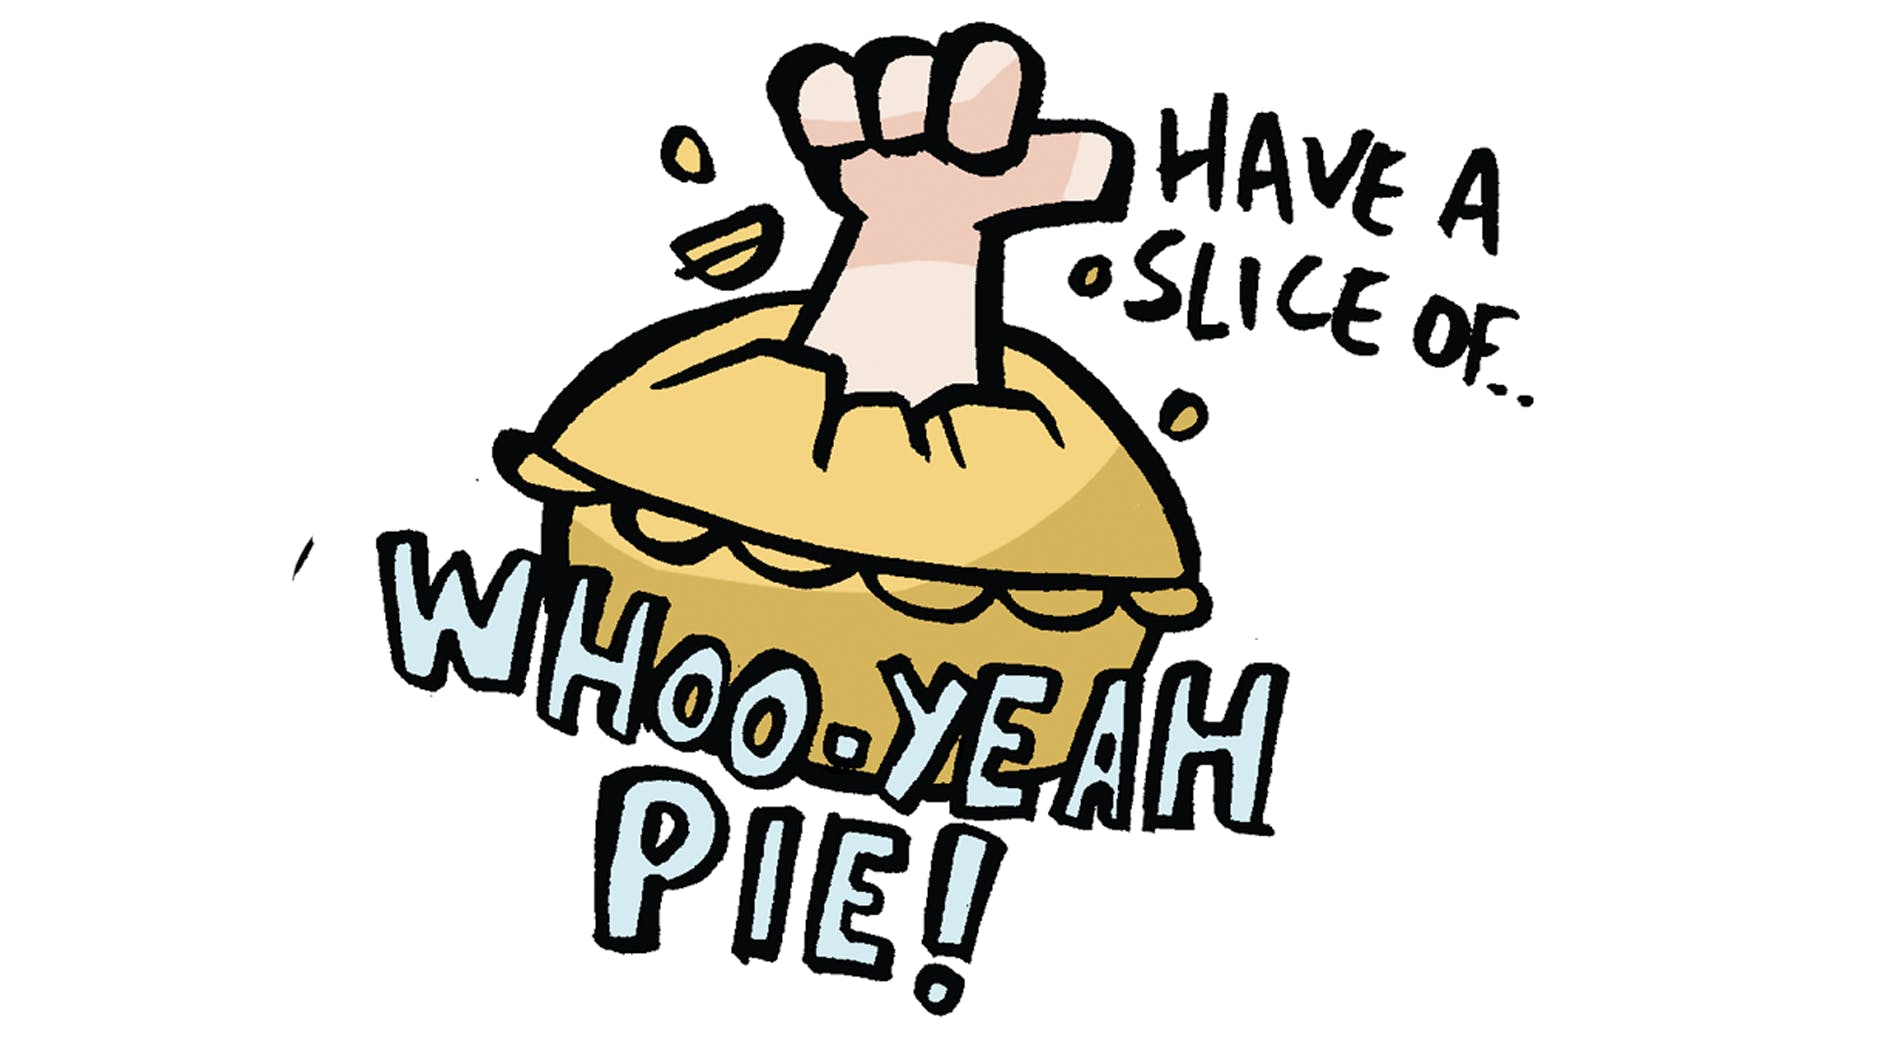 Whoo-Yeavh pie!